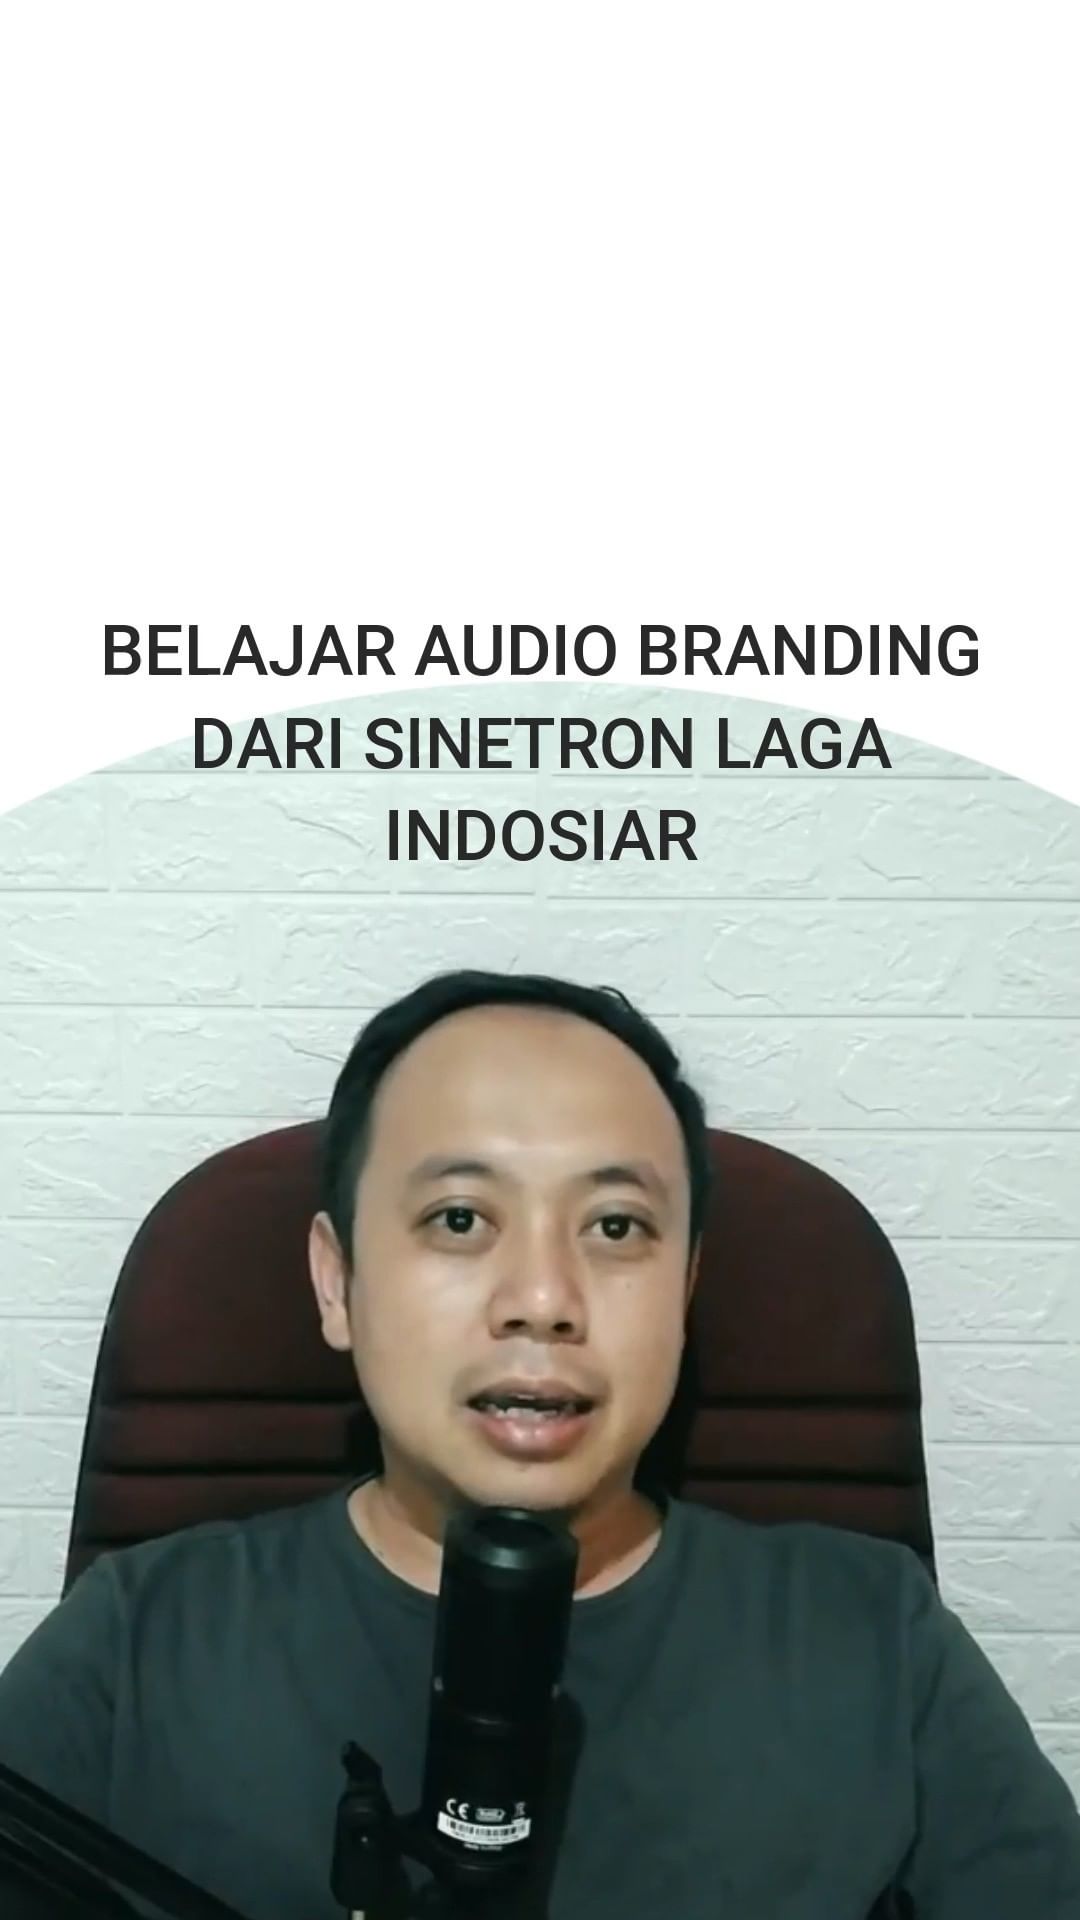 Belajar Audio Branding Dari Indosiar.
.
#audiobranding 